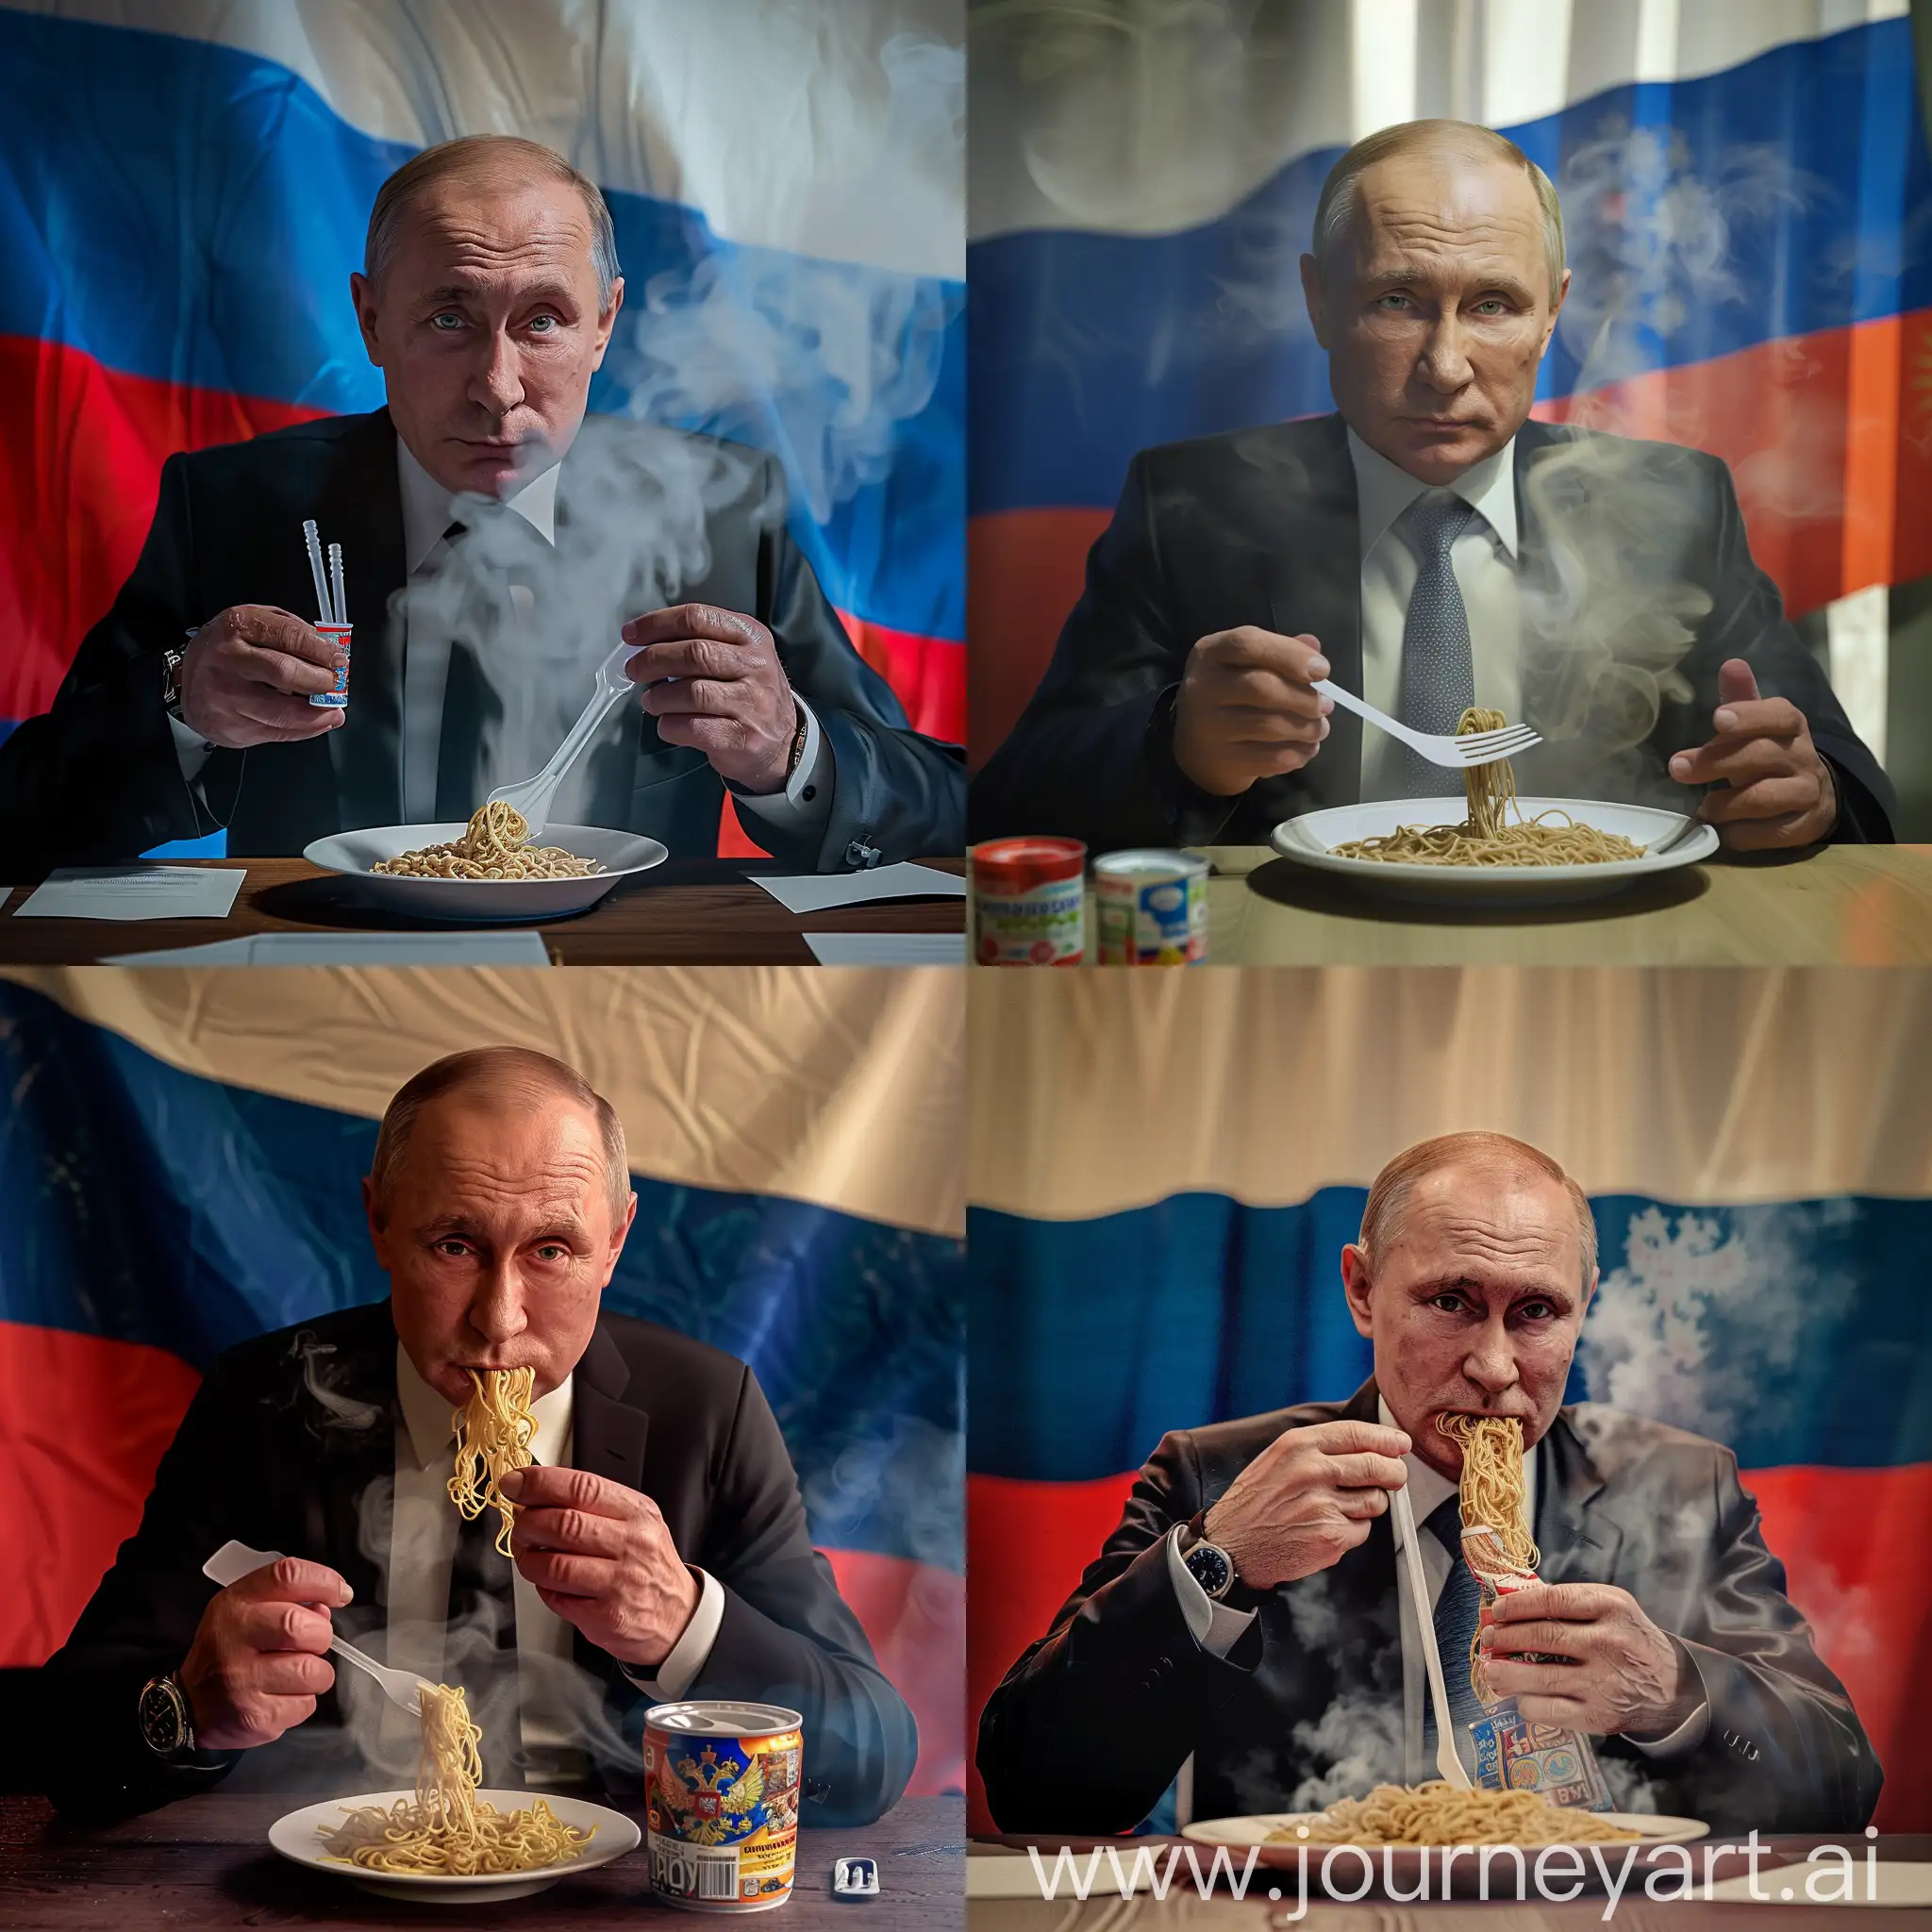 Владимир Путин, сидит за столом, кушает доширак, в руке пластмассовая вилка, пар от доширака, супер детализация, крупный план, задний фон флаг России, заседание, 8к, ультра реалистично, HDR, профессиональное освещение